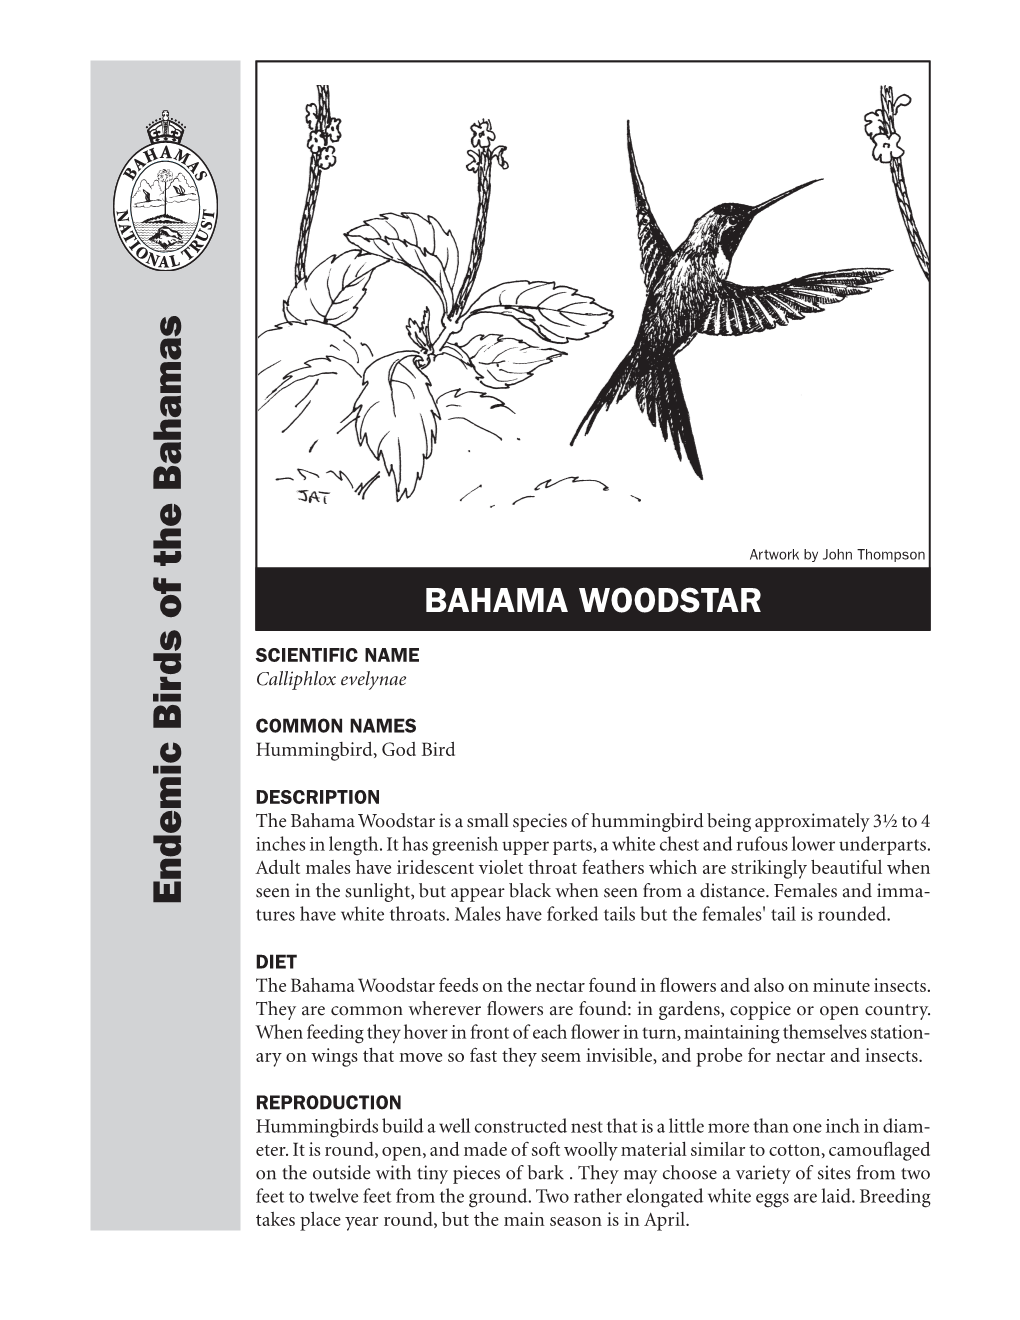 Bahama Woodstar Hummingbird